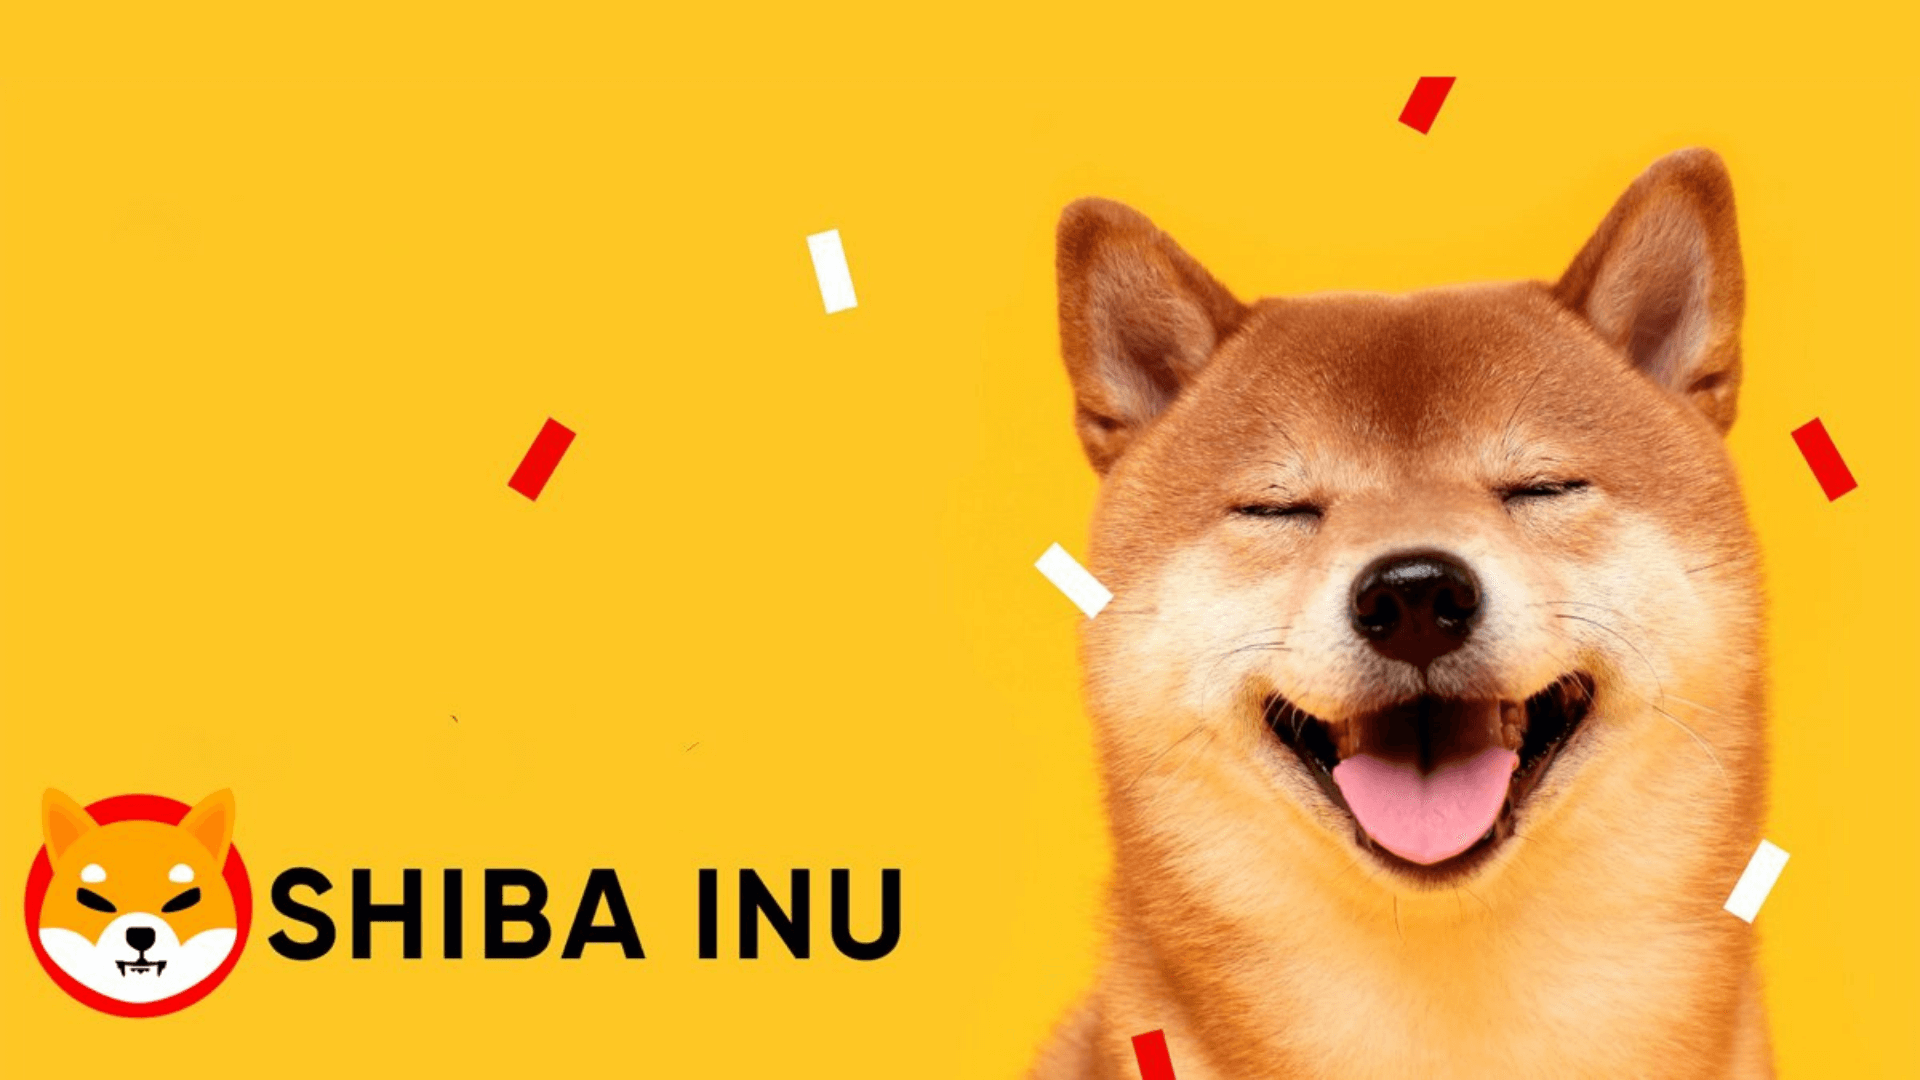 Chó Shiba là biểu tượng của cả hai đồng Dogecoin và Shiba Inu